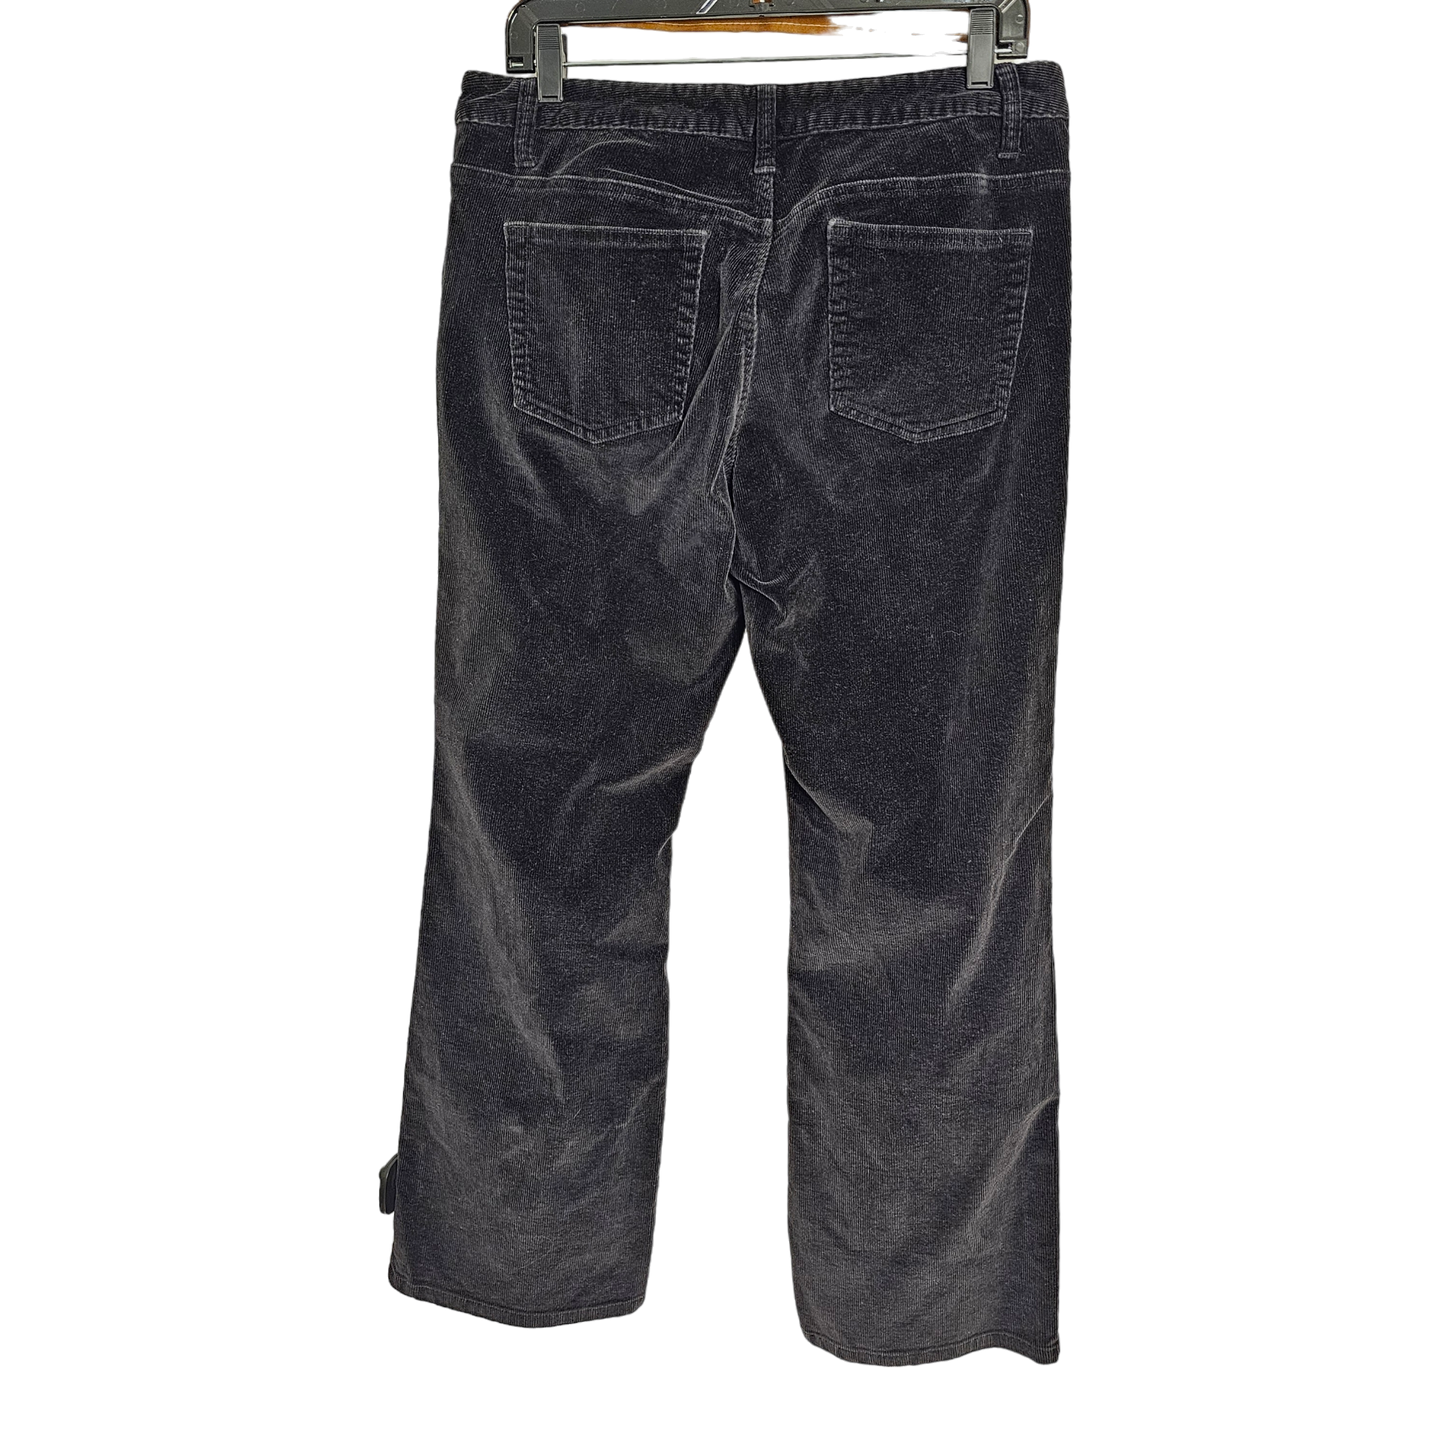 Pants Corduroy By Boston Proper  Size: 12petite